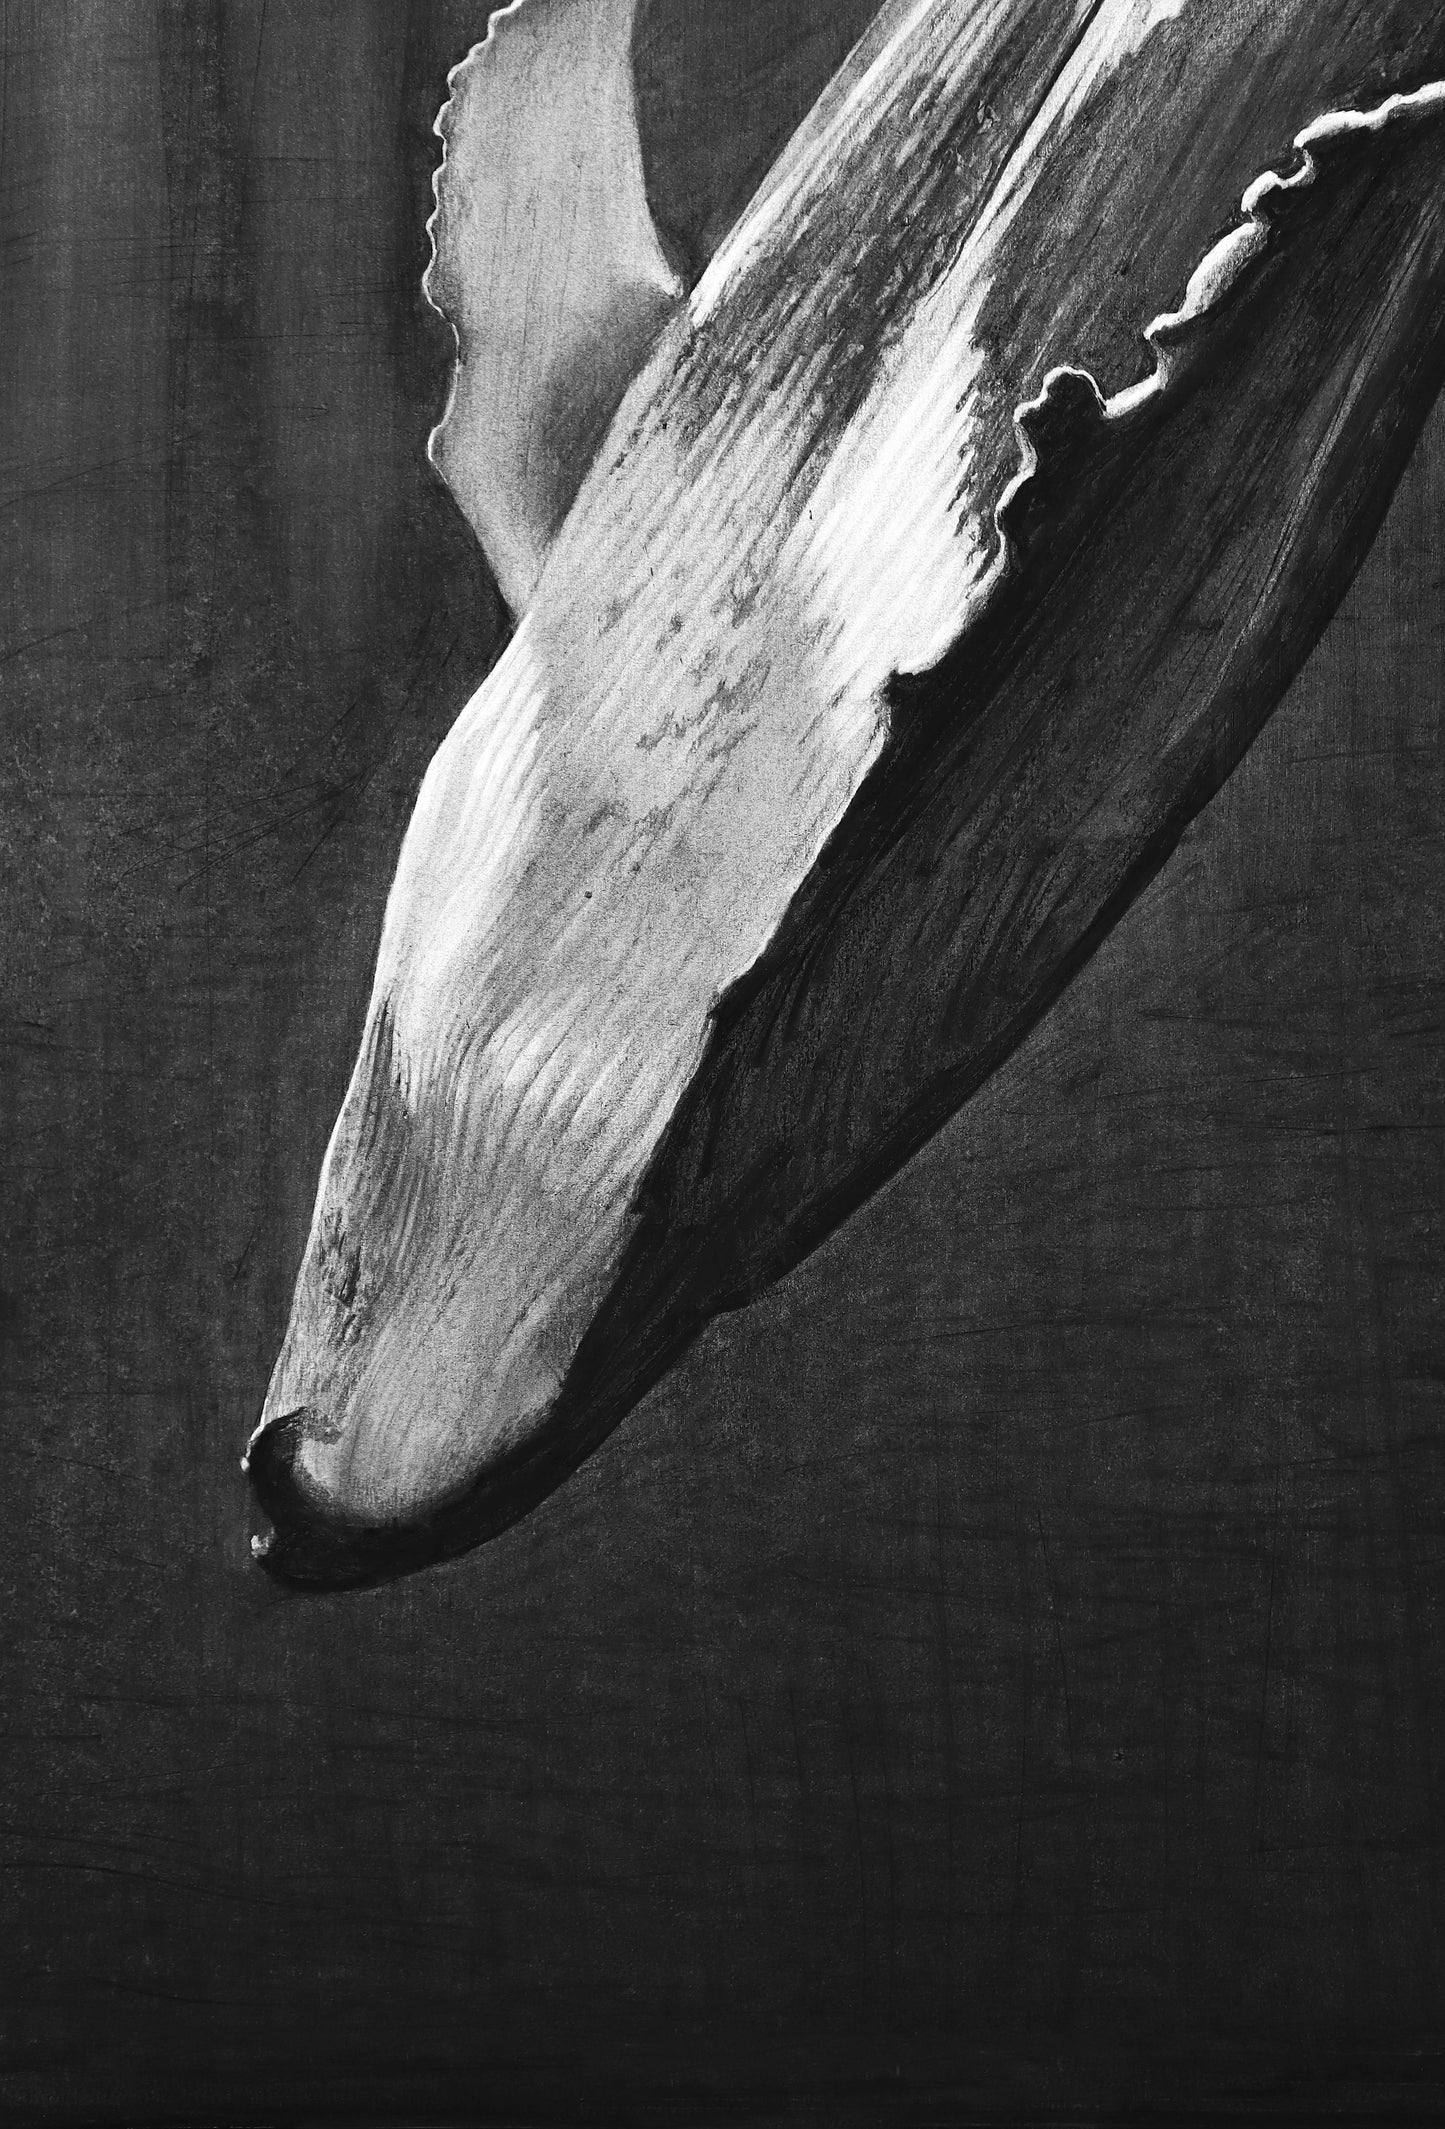 "Whale" Print